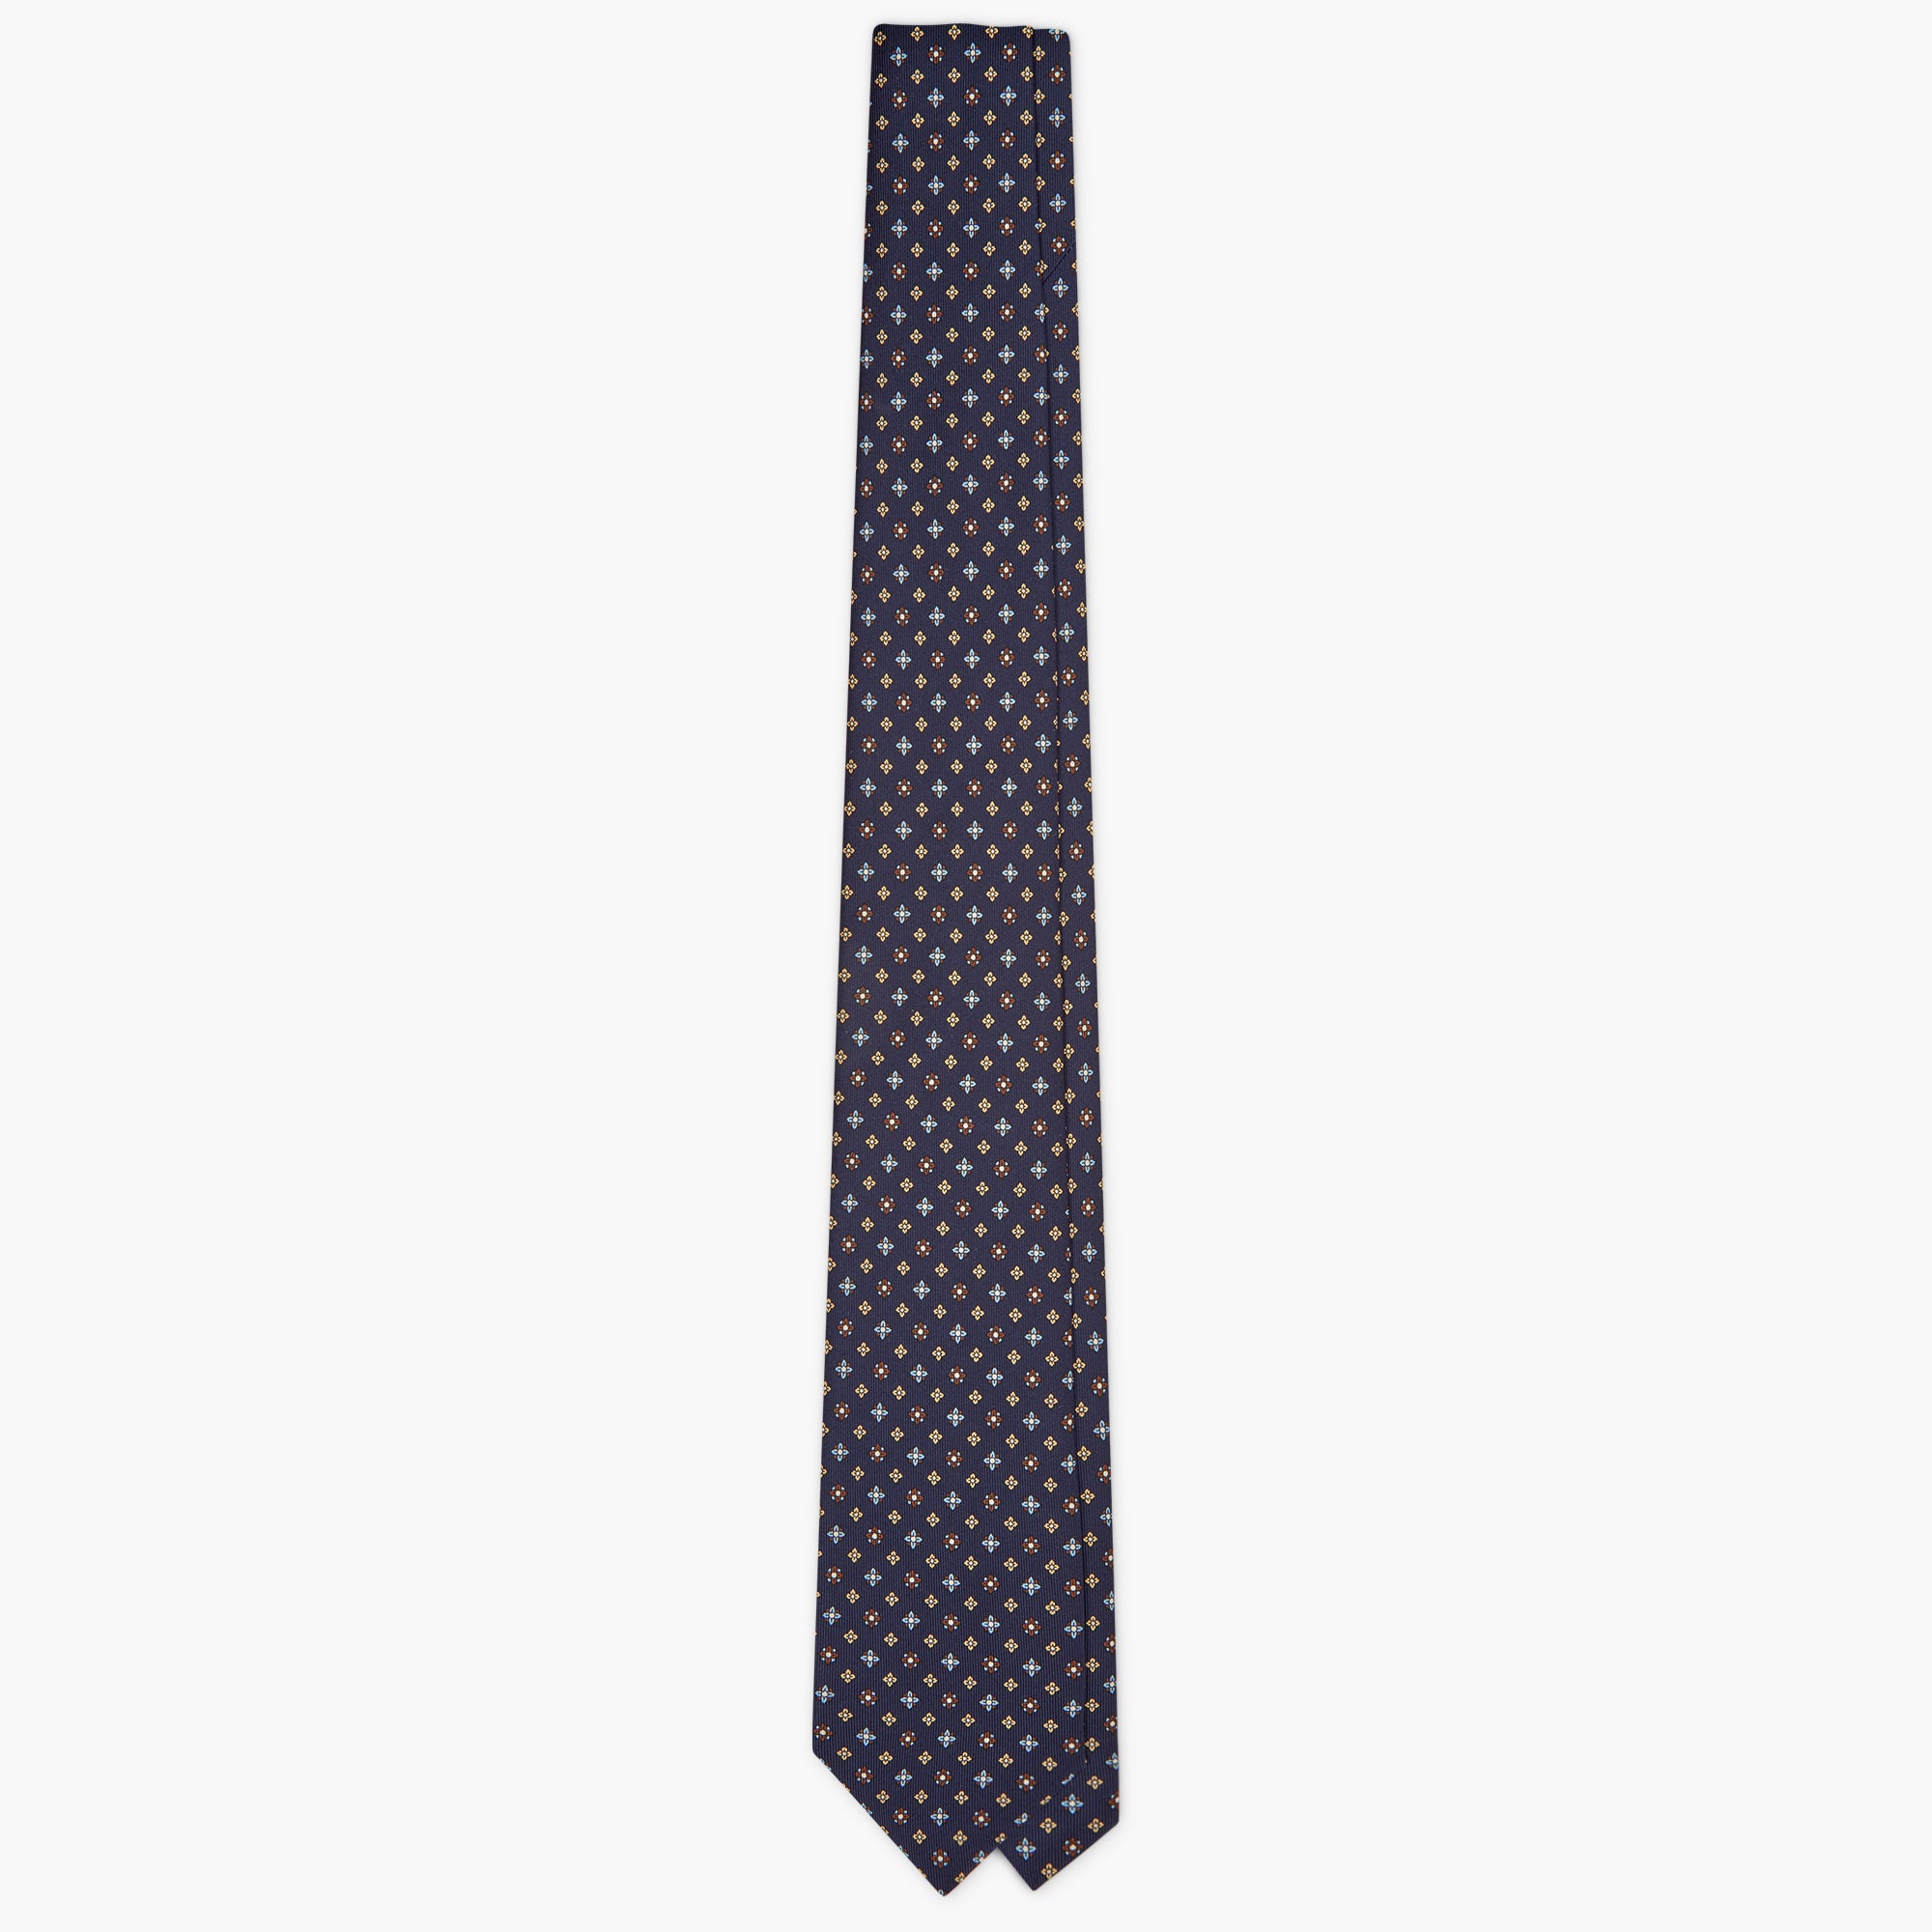 Cravatta 7 Pieghe In Seta Inglese Stampata Floreale - Blu Giallo